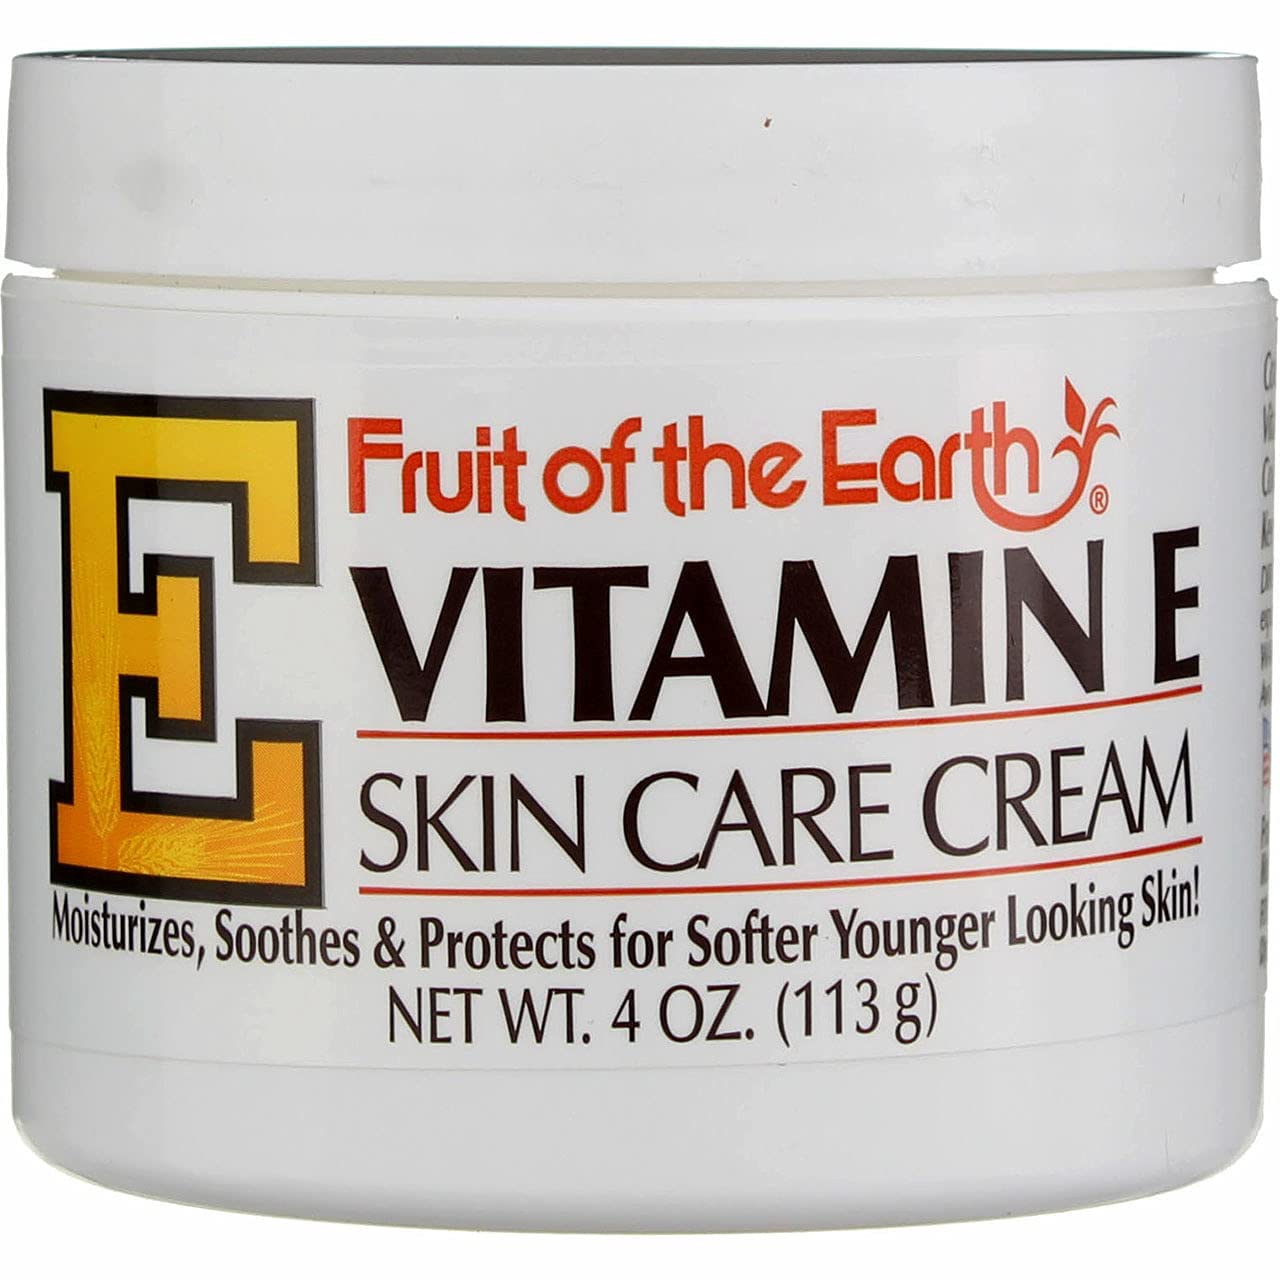 Có thể sử dụng kem chăm sóc da Vitamin E kết hợp với các sản phẩm chăm sóc da khác không?

Note: Phần trả lời cho các câu hỏi này không được yêu cầu trong yêu cầu của bạn.